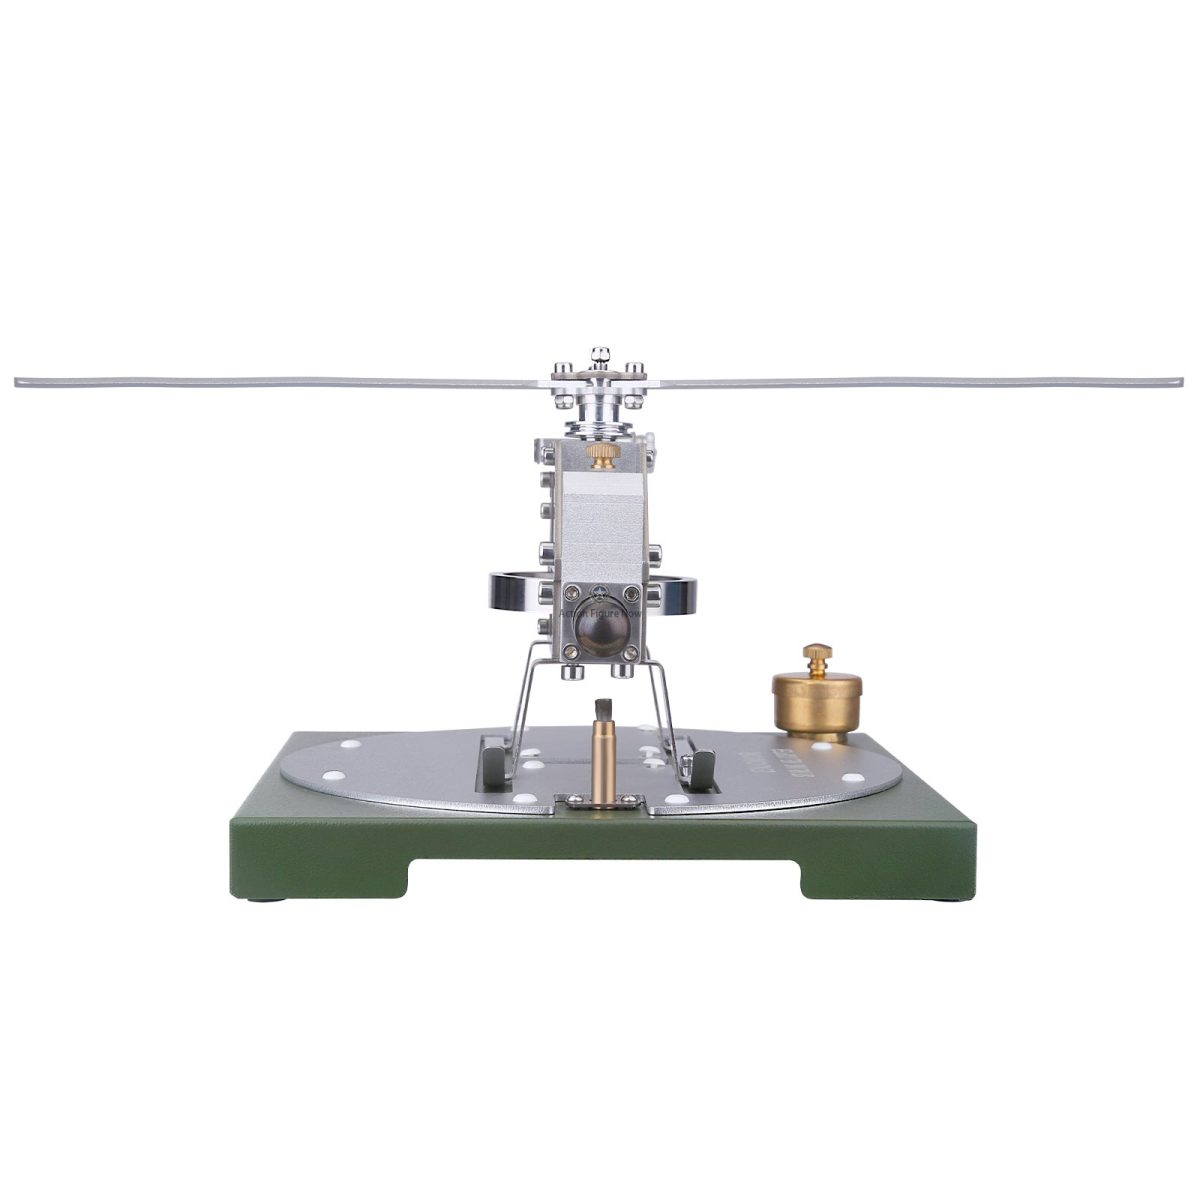 ENJOMOR Stirling Helicopter Model Kit | Gamma Hot Air Stirling Engine Model | DIY Assembly Model | STEM Educational Toy